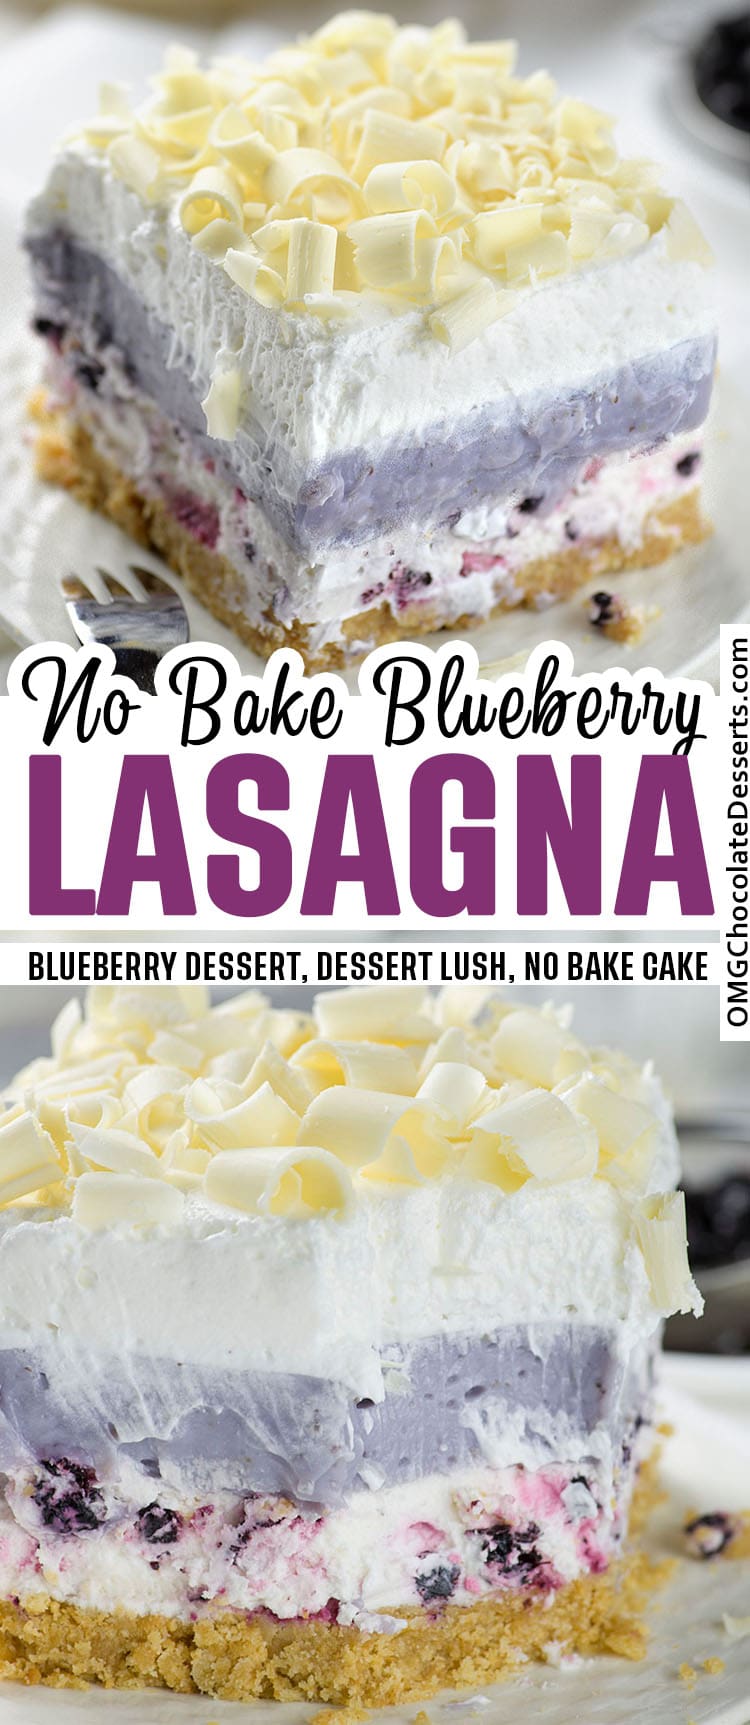 No Bake Blueberry Lasagna